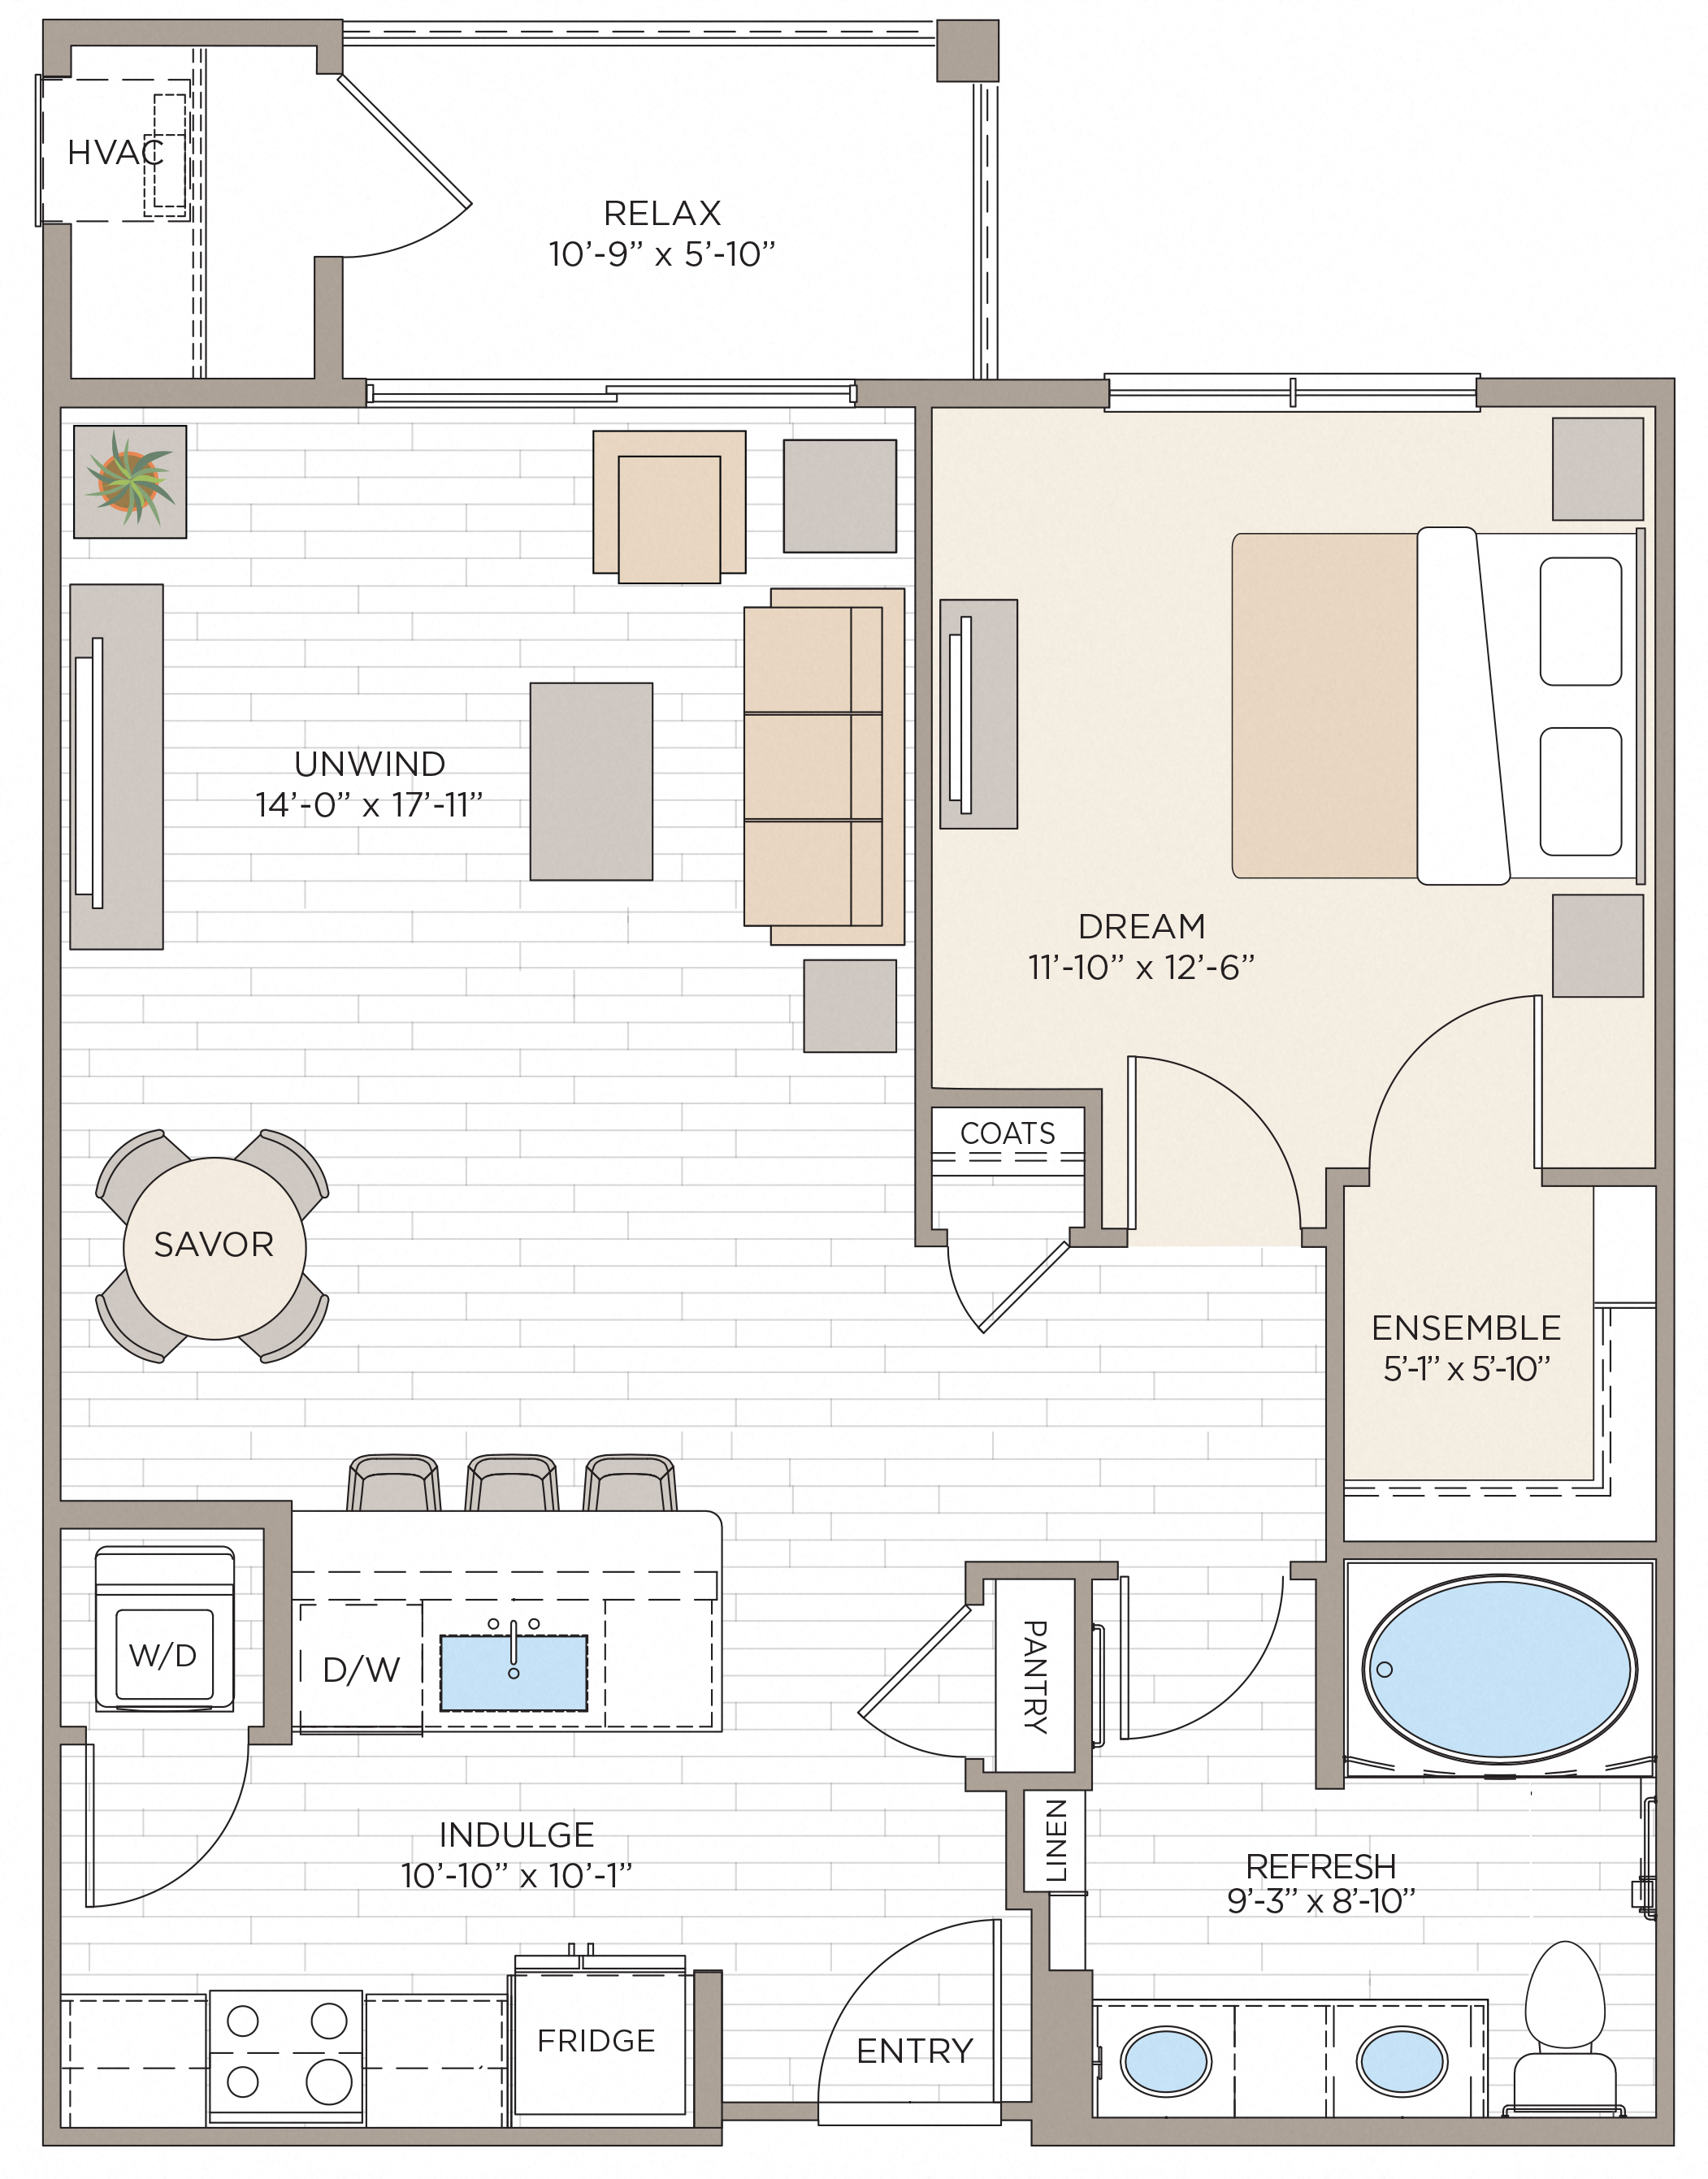 Floorplan for Apartment #10212, 1 bedroom unit at Halstead Maynard Crossing